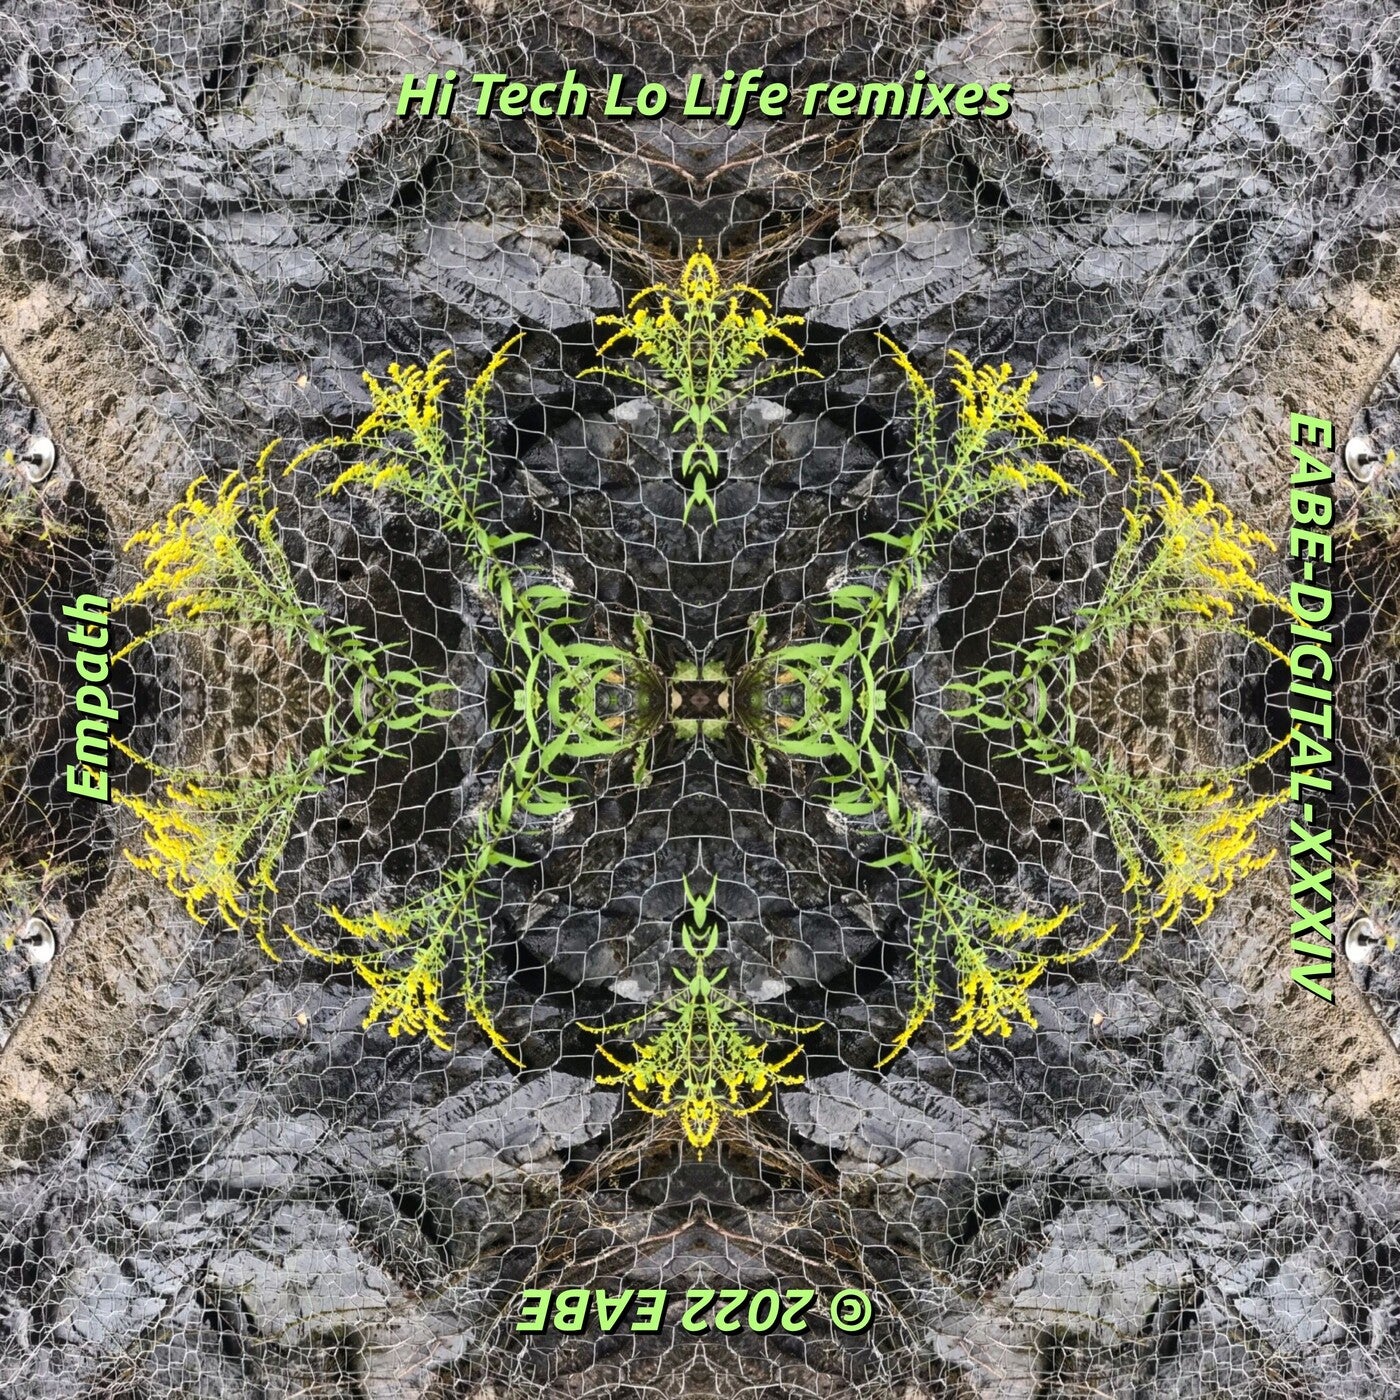 Hi Tech Lo Life Remixes